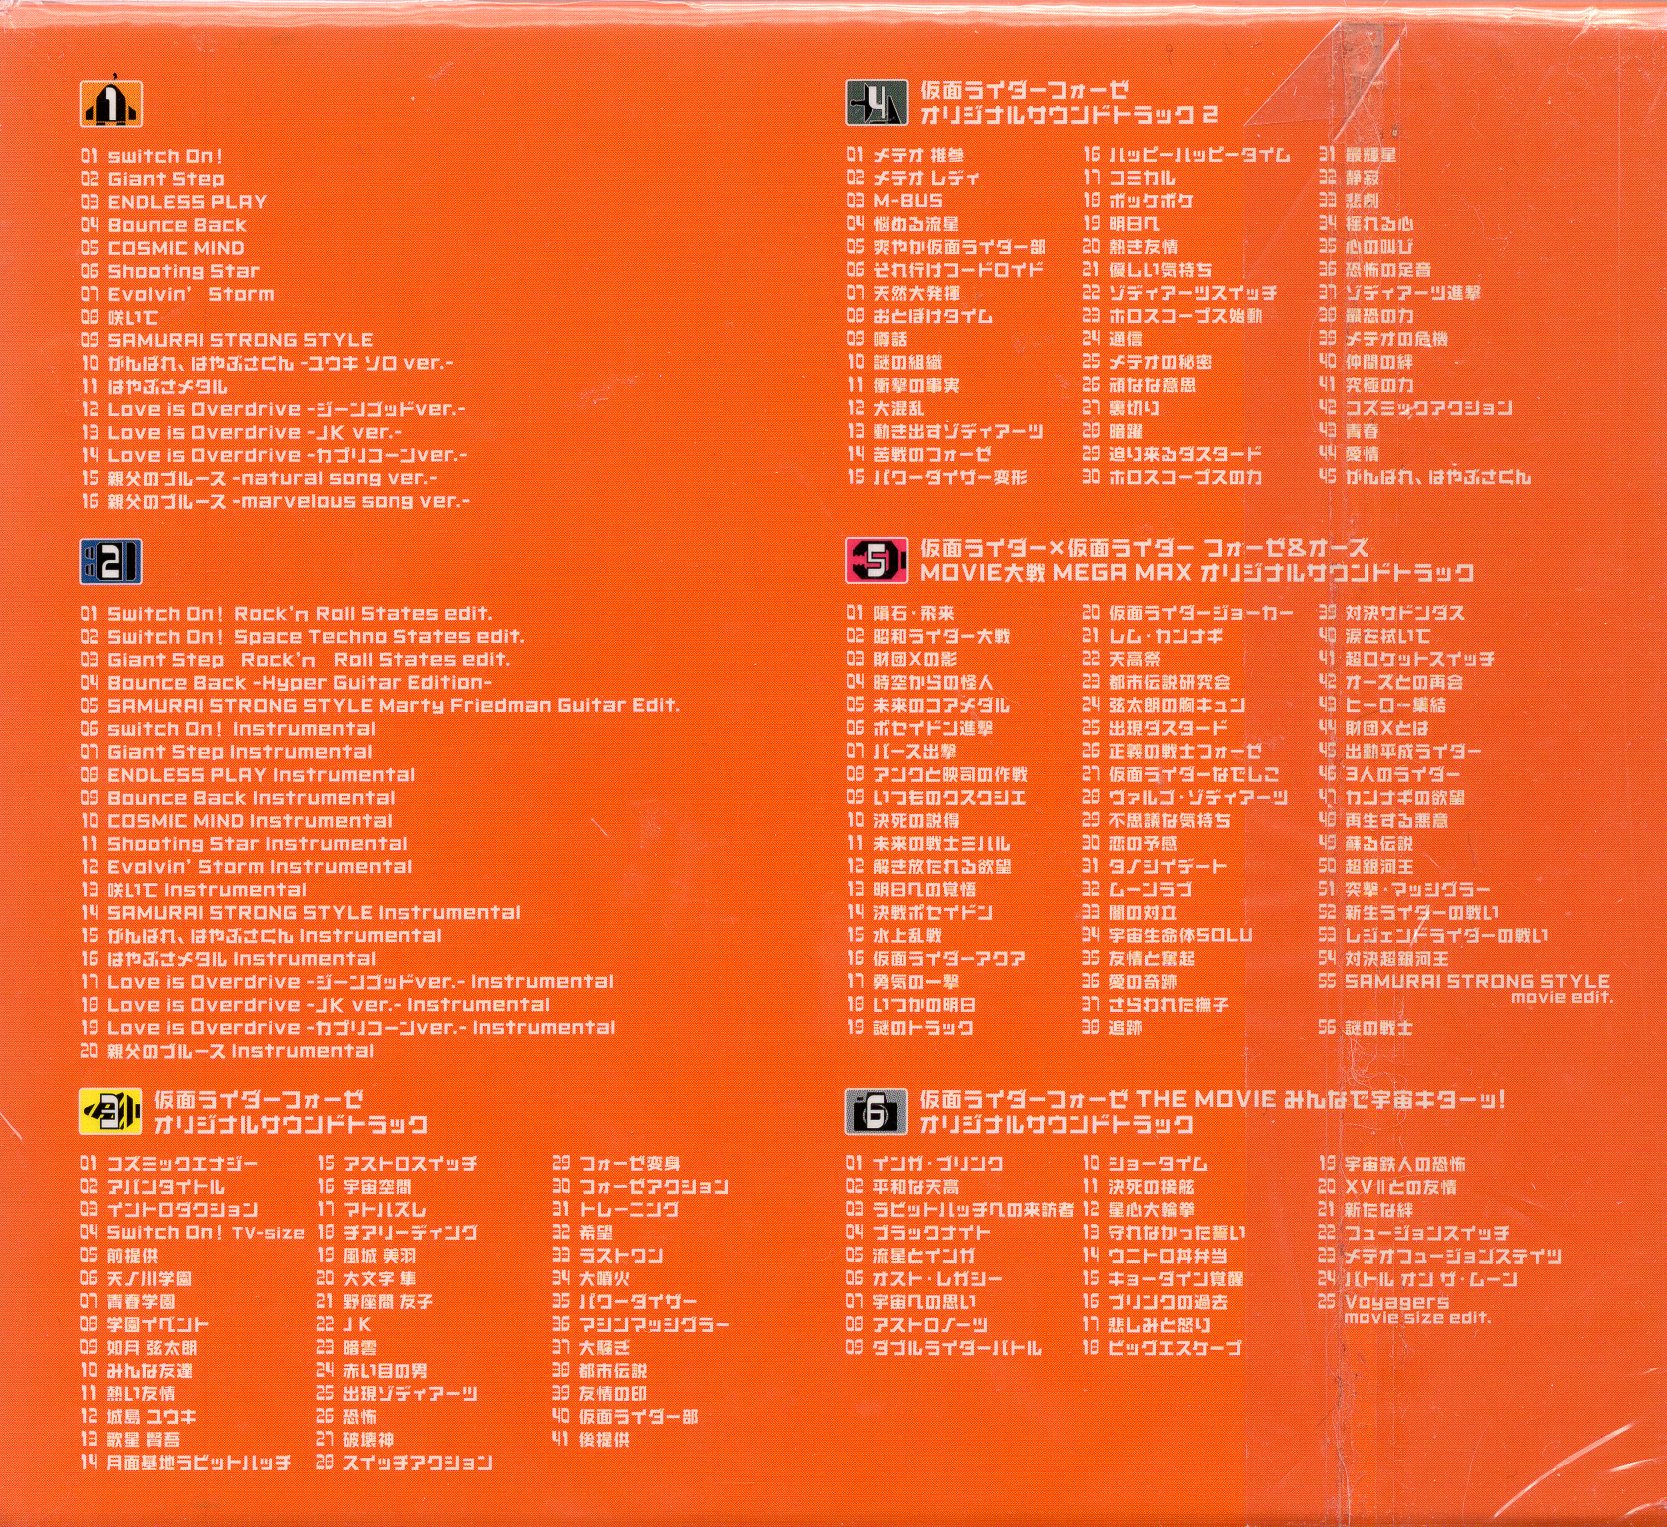 エイベックス・マーケティング 特撮CD 仮面ライダーフォーゼ CD-BOX